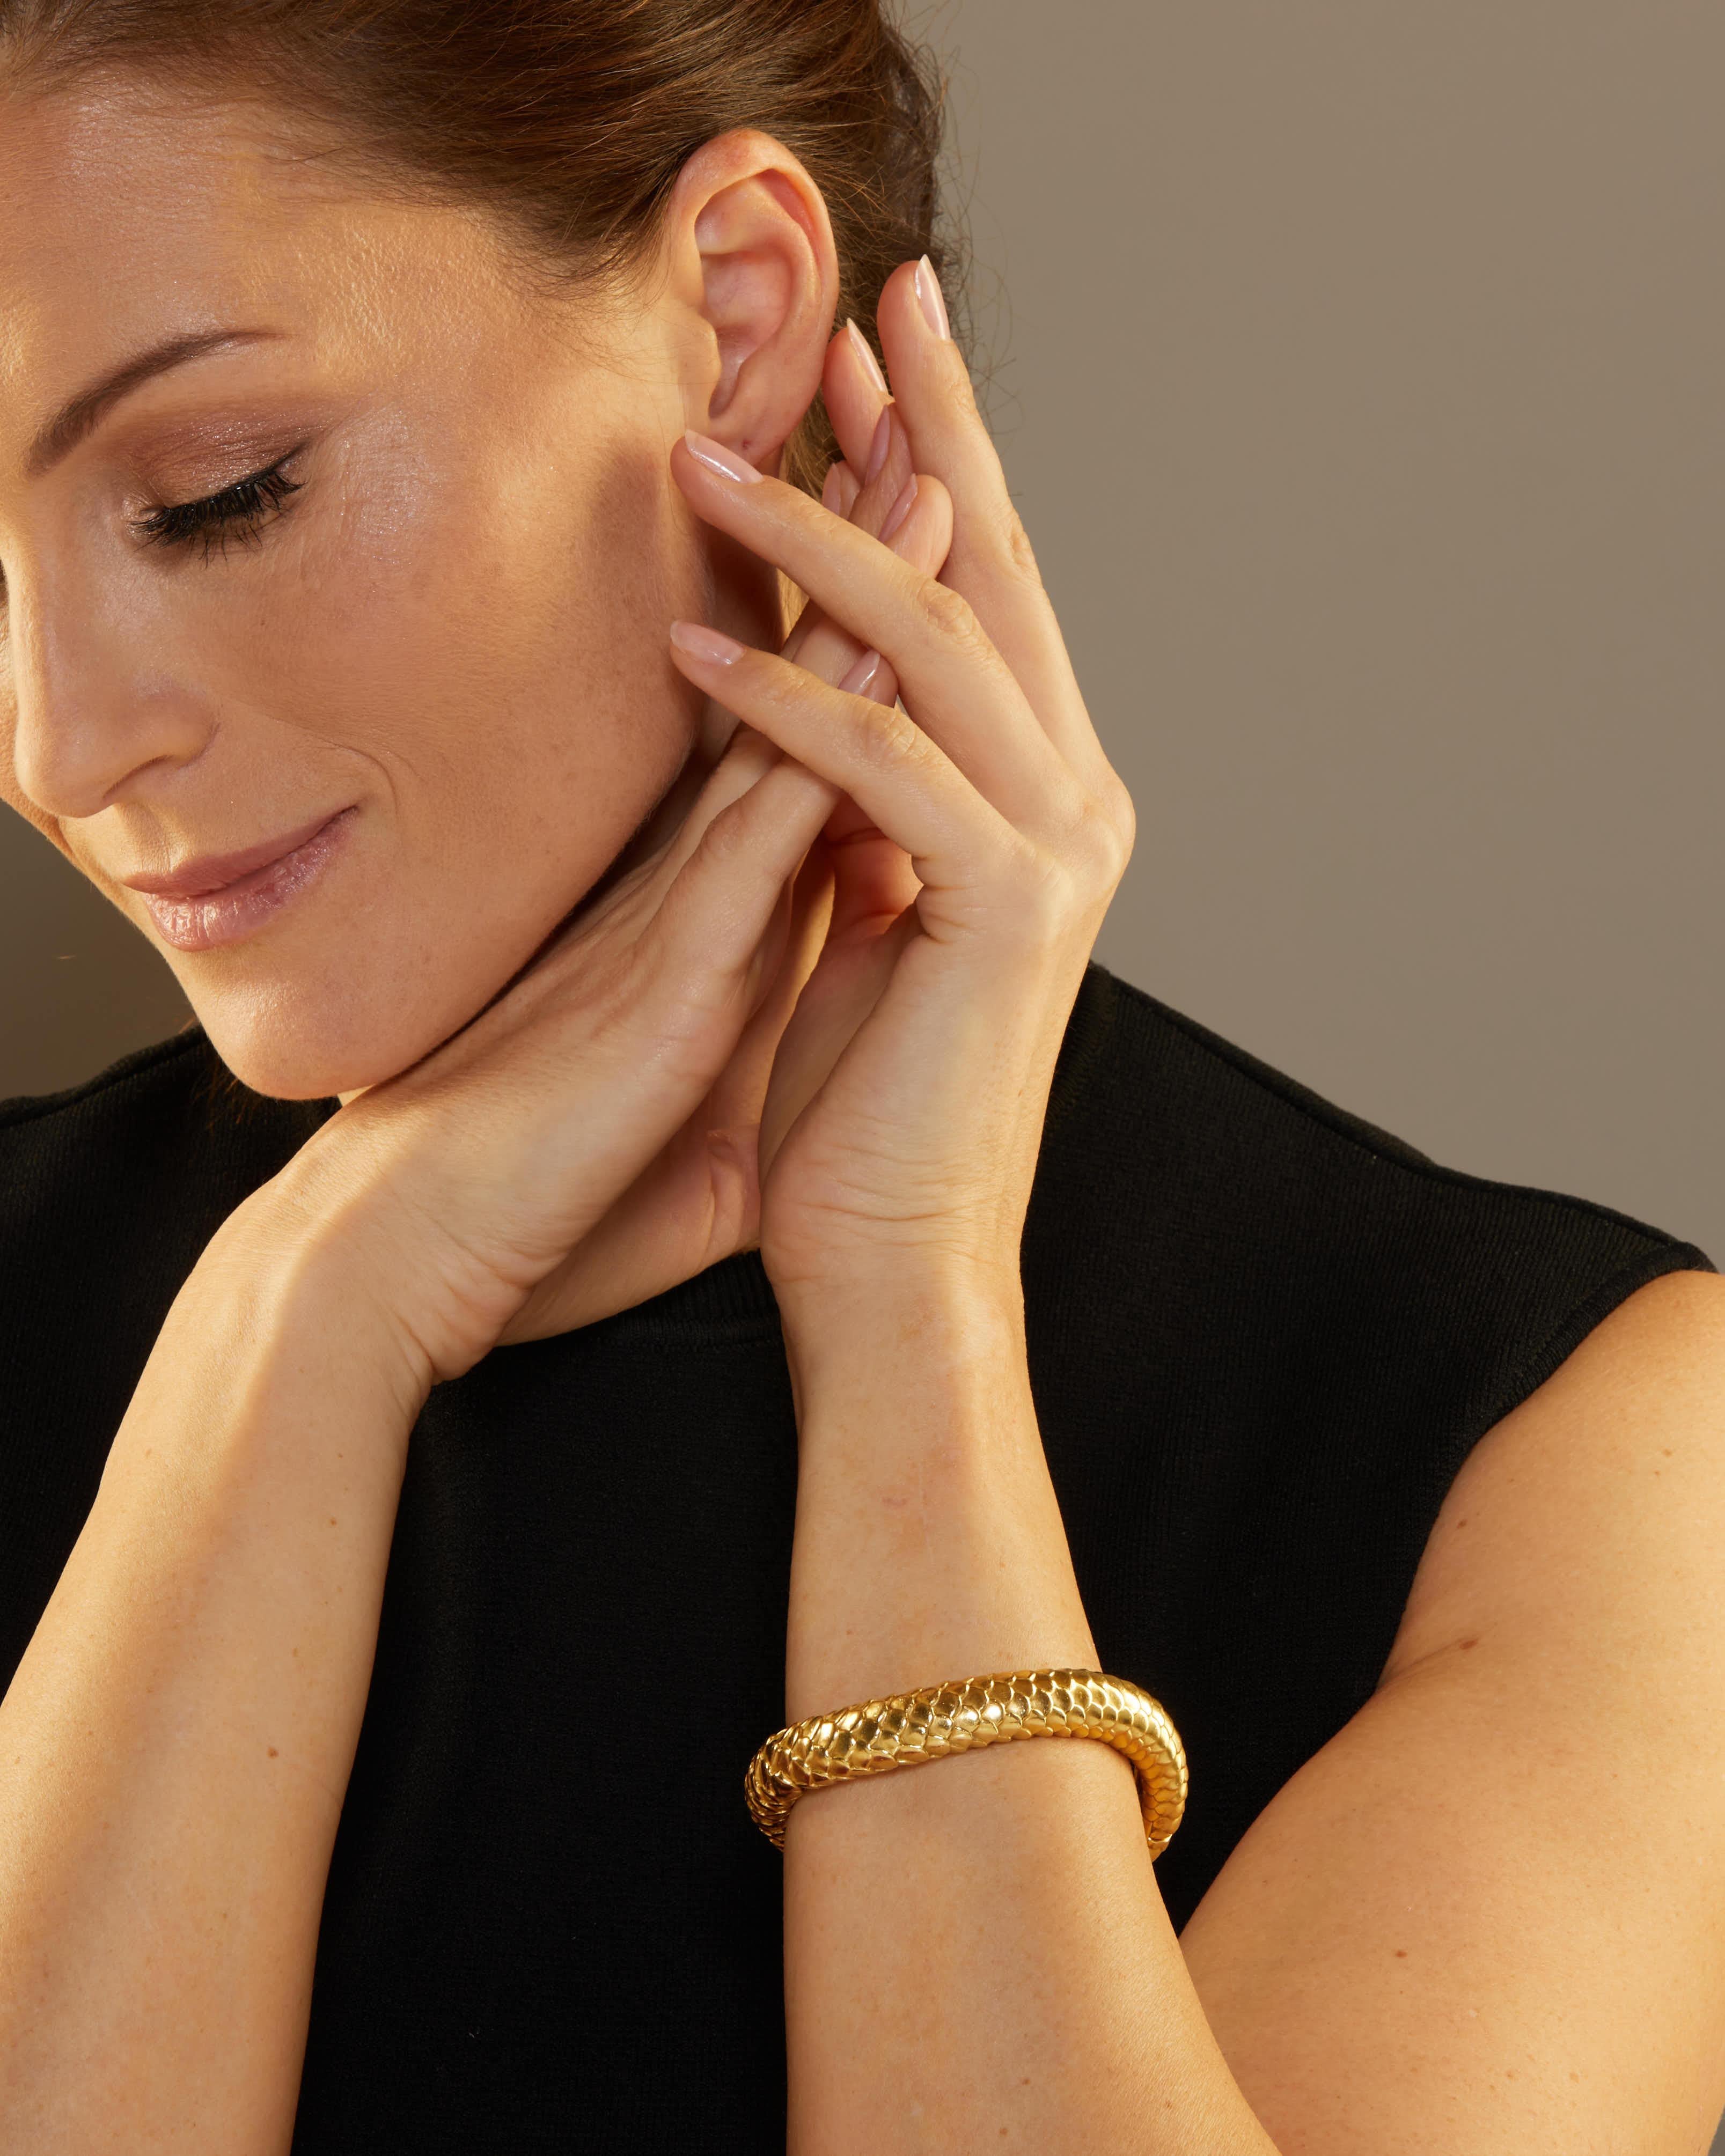 Angela Cummings est attirée par les motifs et les formes inhérents à la Nature. Ce bracelet en or massif s'enroule gracieusement autour du poignet et présente un motif d'écailles abstraites dans une finition satinée lisse. 

La pièce se ferme à